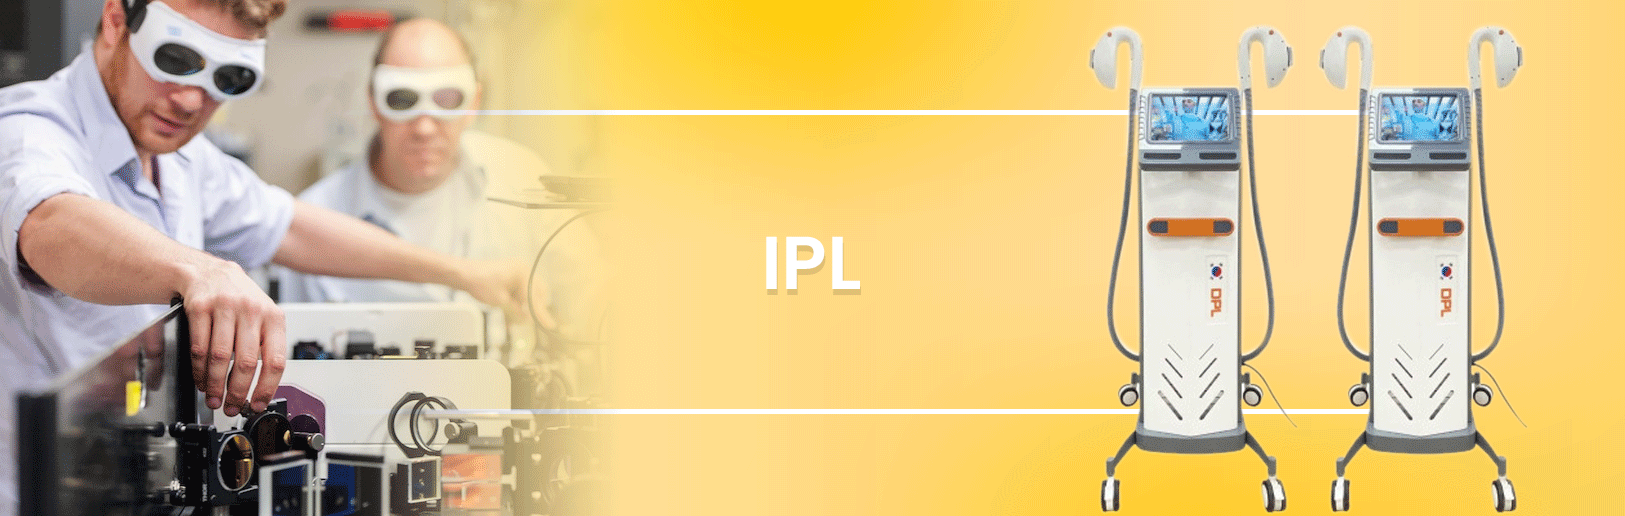 IPL/ DPL Machines